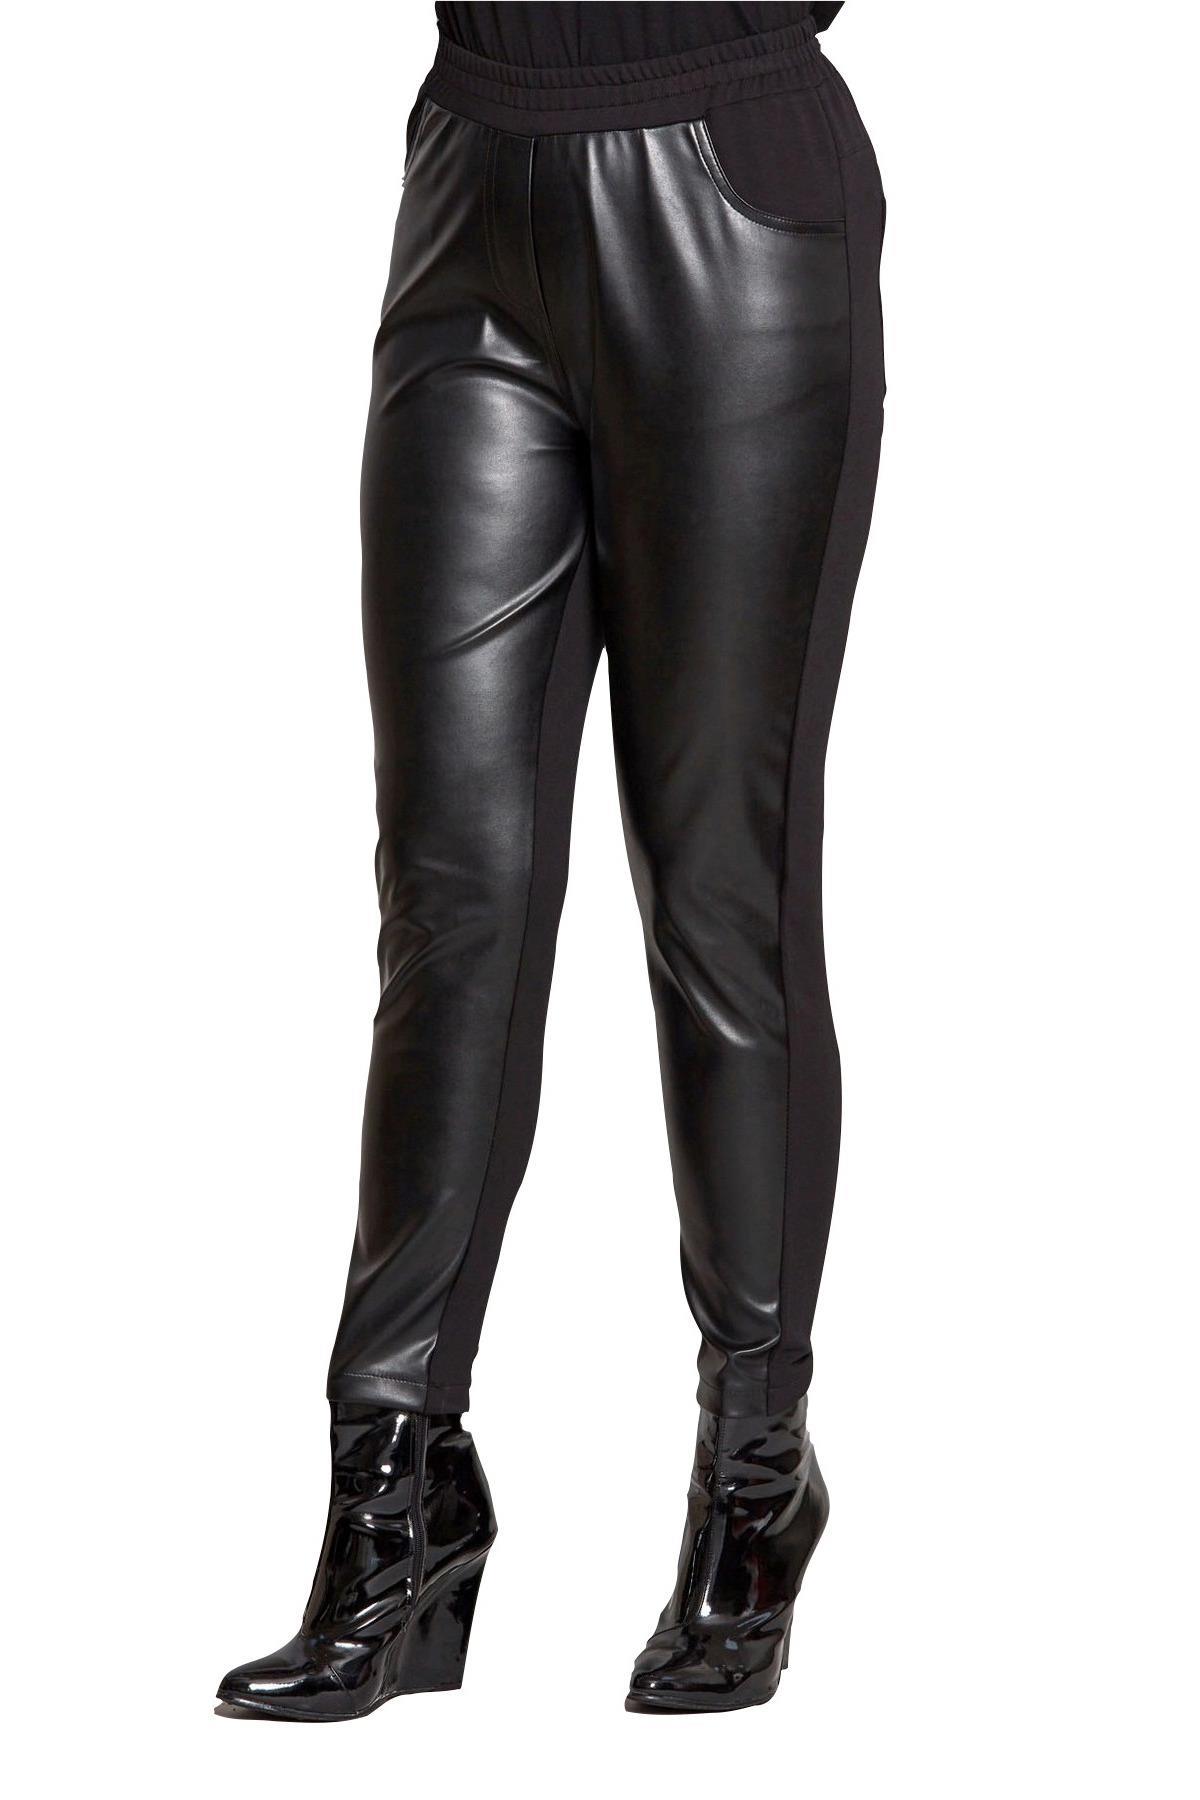 fierte-kadin-buyuk-beden-pantolon-lm52130-deri-normal-elastik-bel-duz-paca-antrasit-siyah-24433.jpg